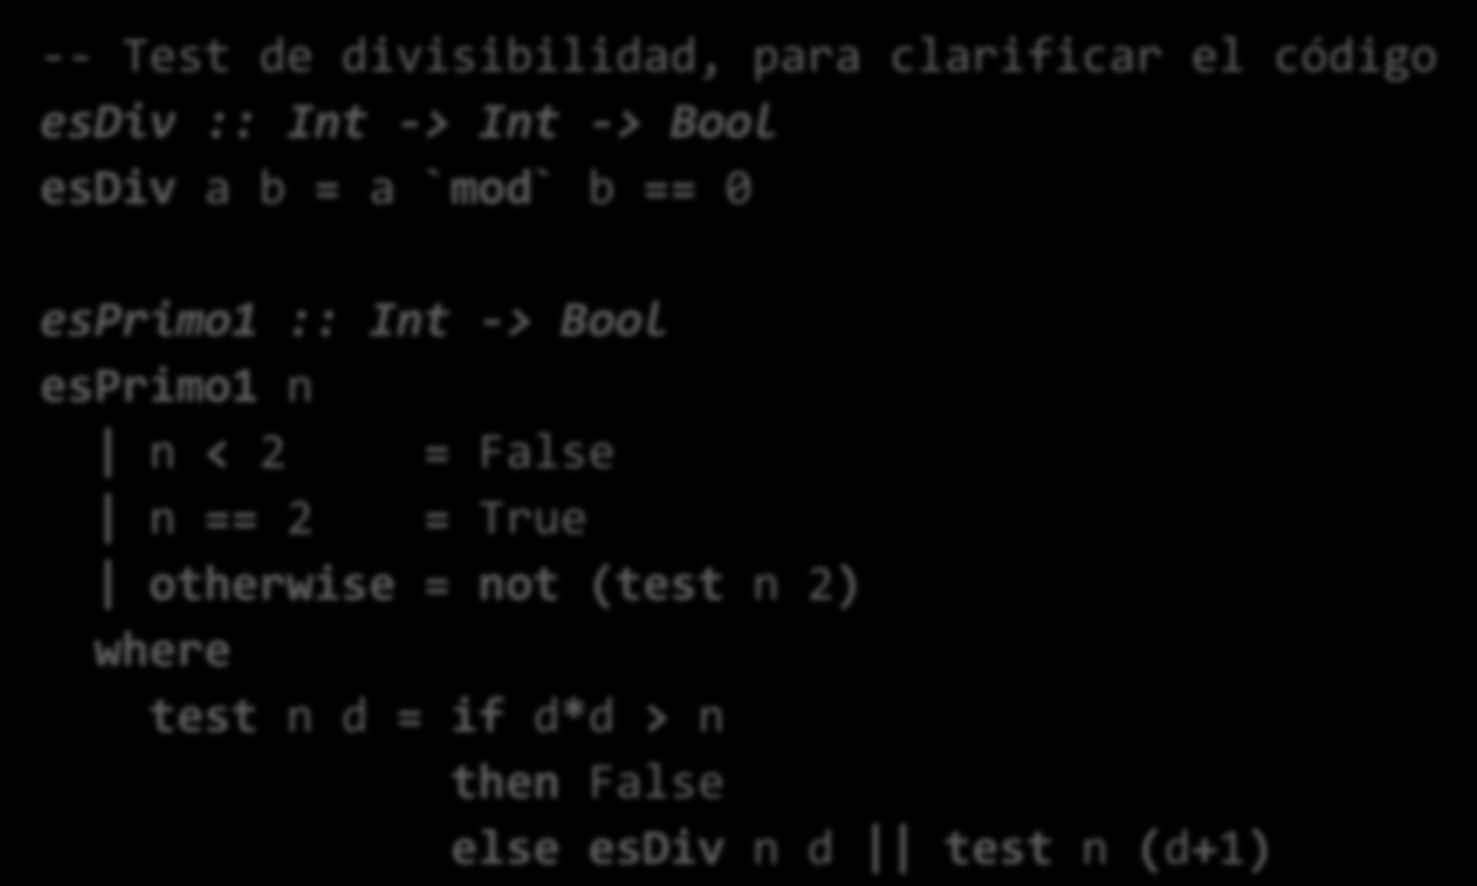 Ejemplo: Test de primalidad (II) El bucle de comprobación de divisores se codifica recursivamente, usando una función local: -- Test de divisibilidad, para clarificar el código esdiv :: Int -> Int ->